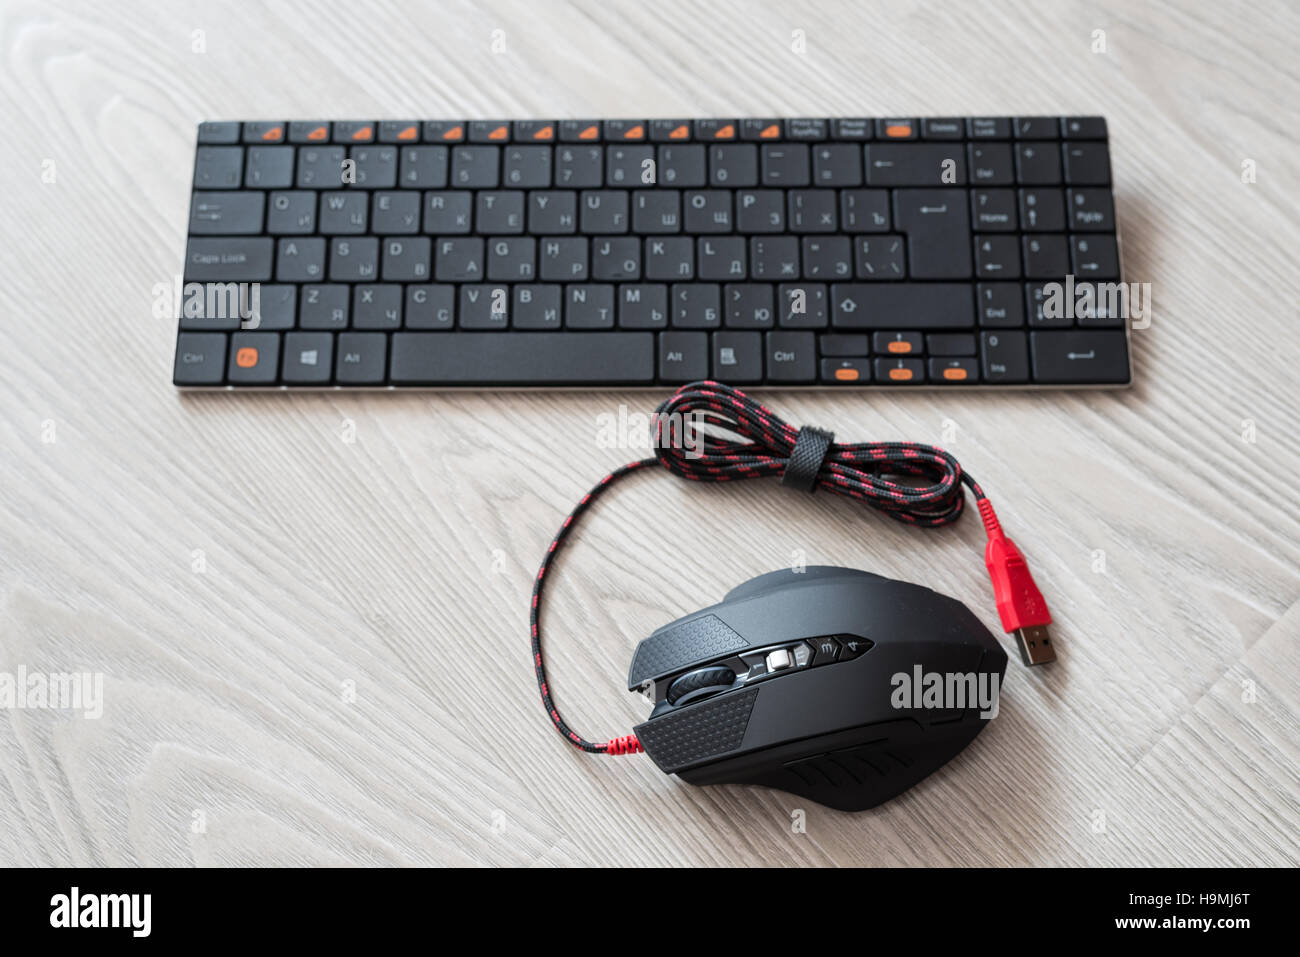 Vista superiore del calcolatore nero mouse e tastiera con inglese e lettere in russo Foto Stock